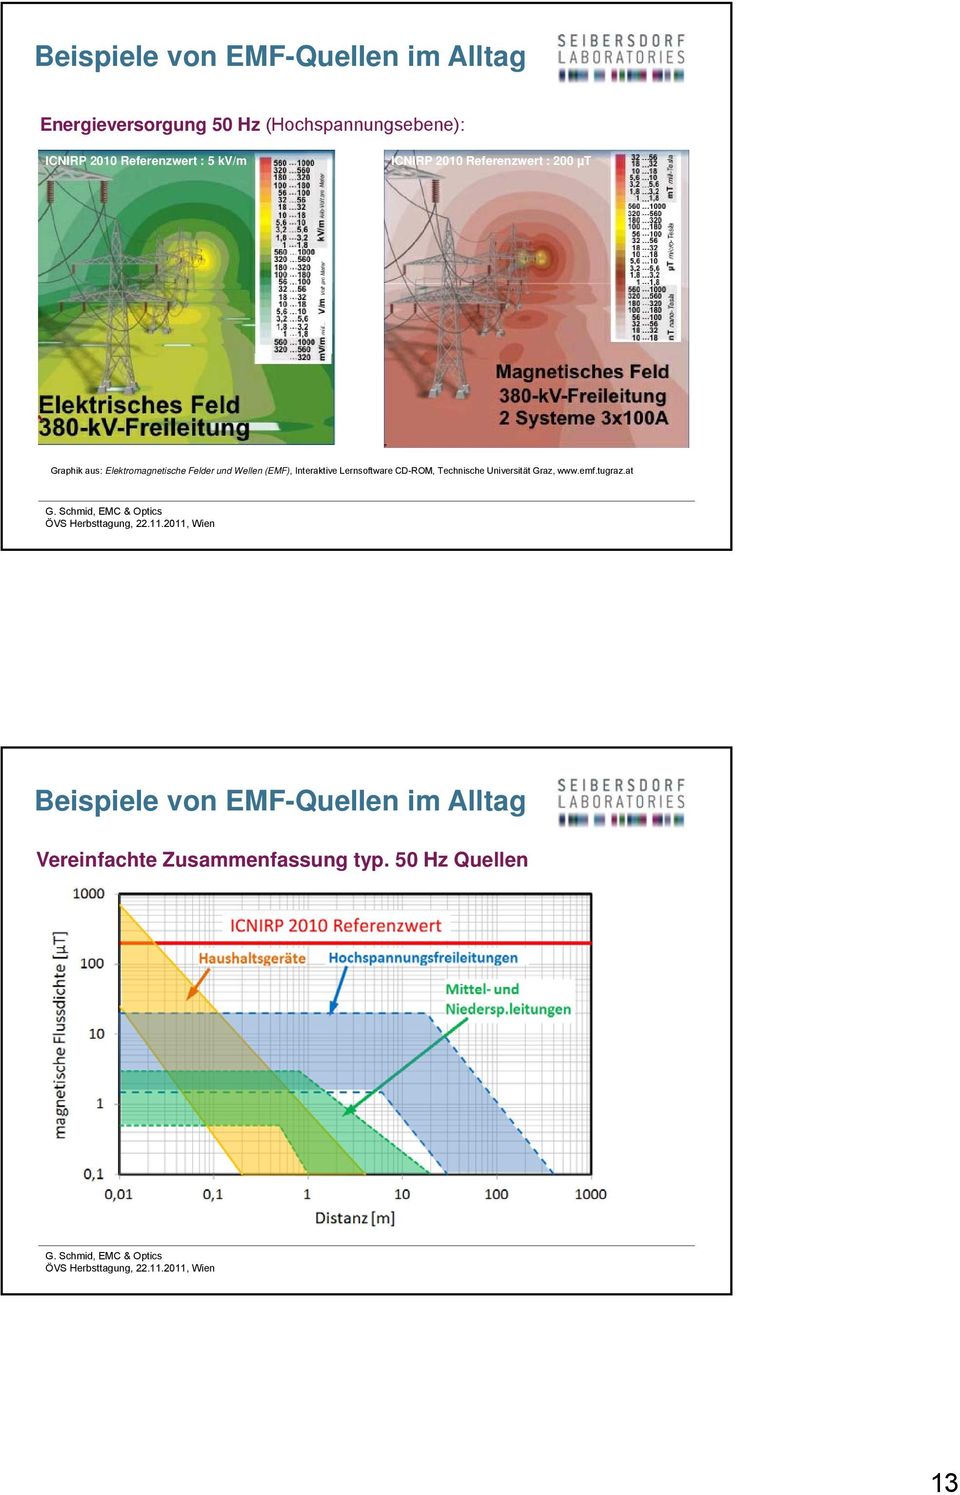 Felder und Wellen (EMF), Interaktive Lernsoftware CD-ROM, Technische Universität Graz, www.